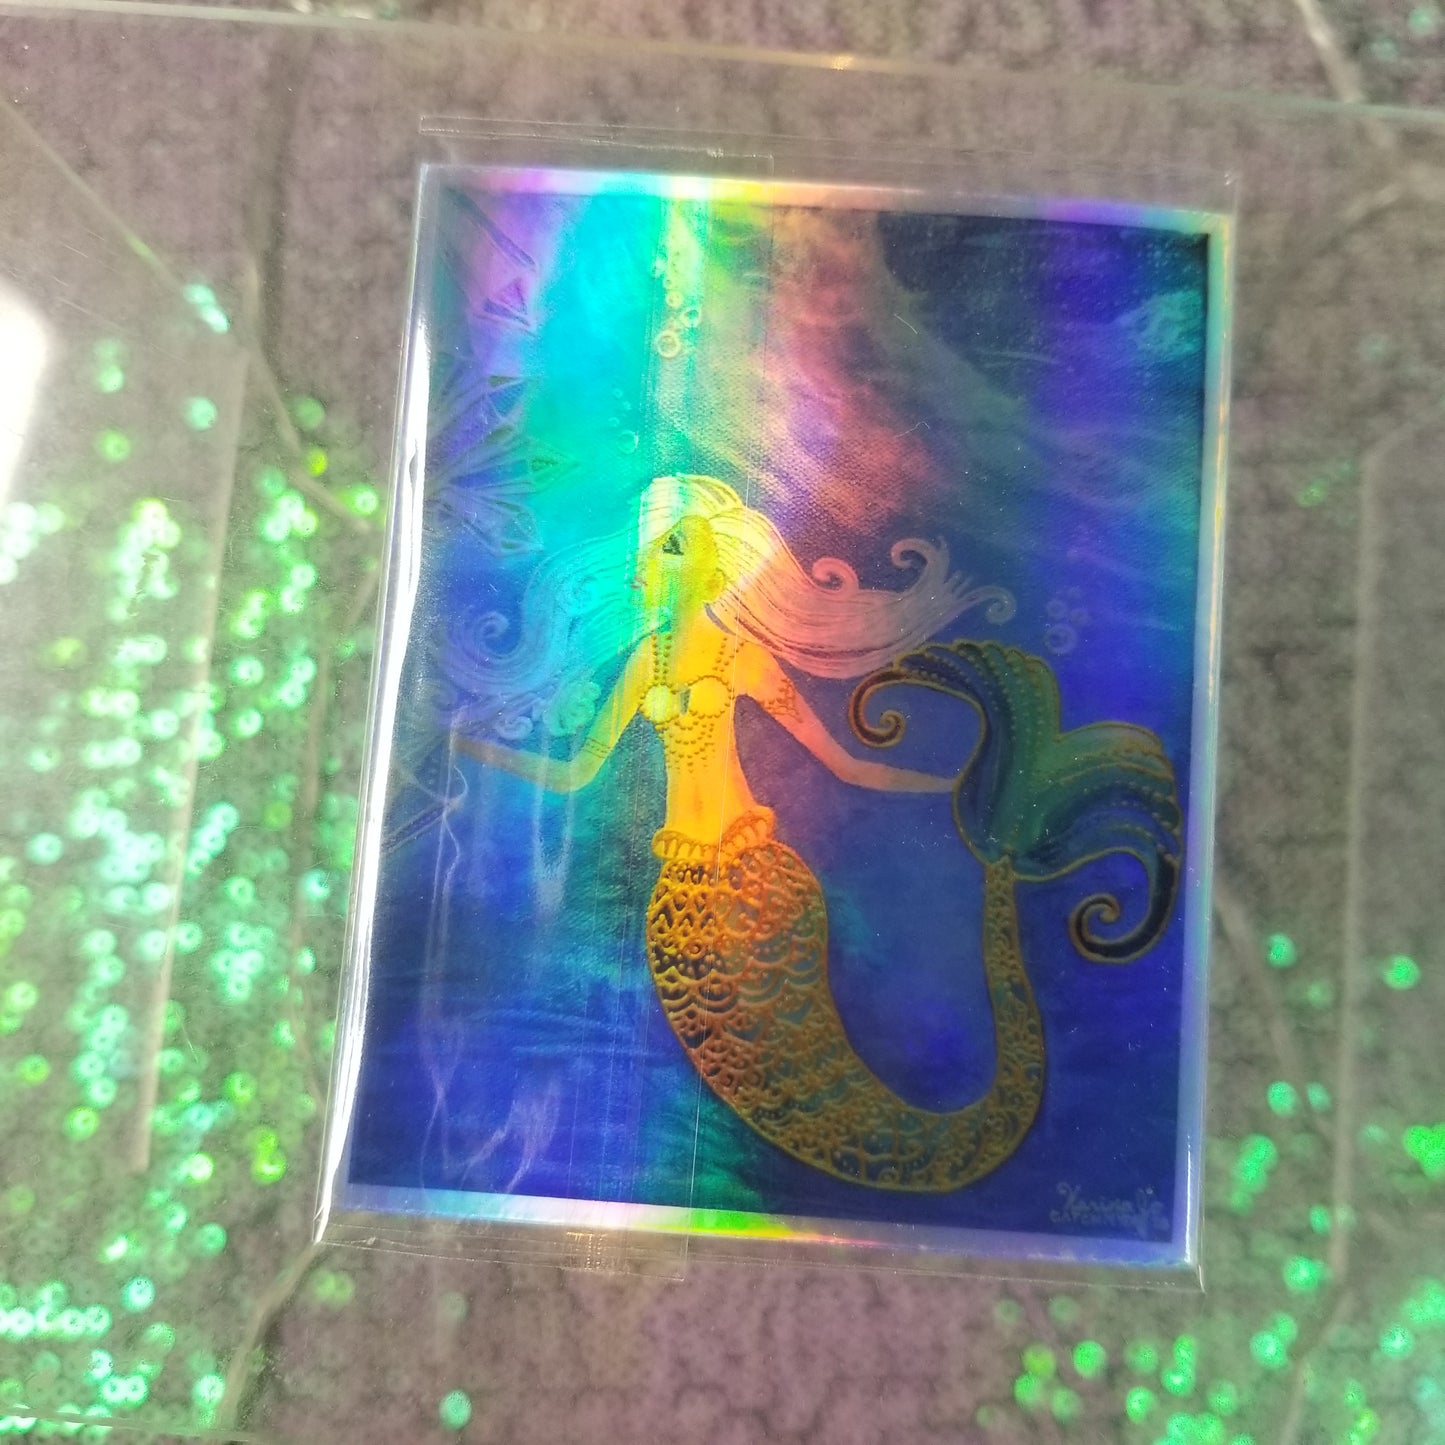 Crystal Mermaid Waterproof Art Sticker